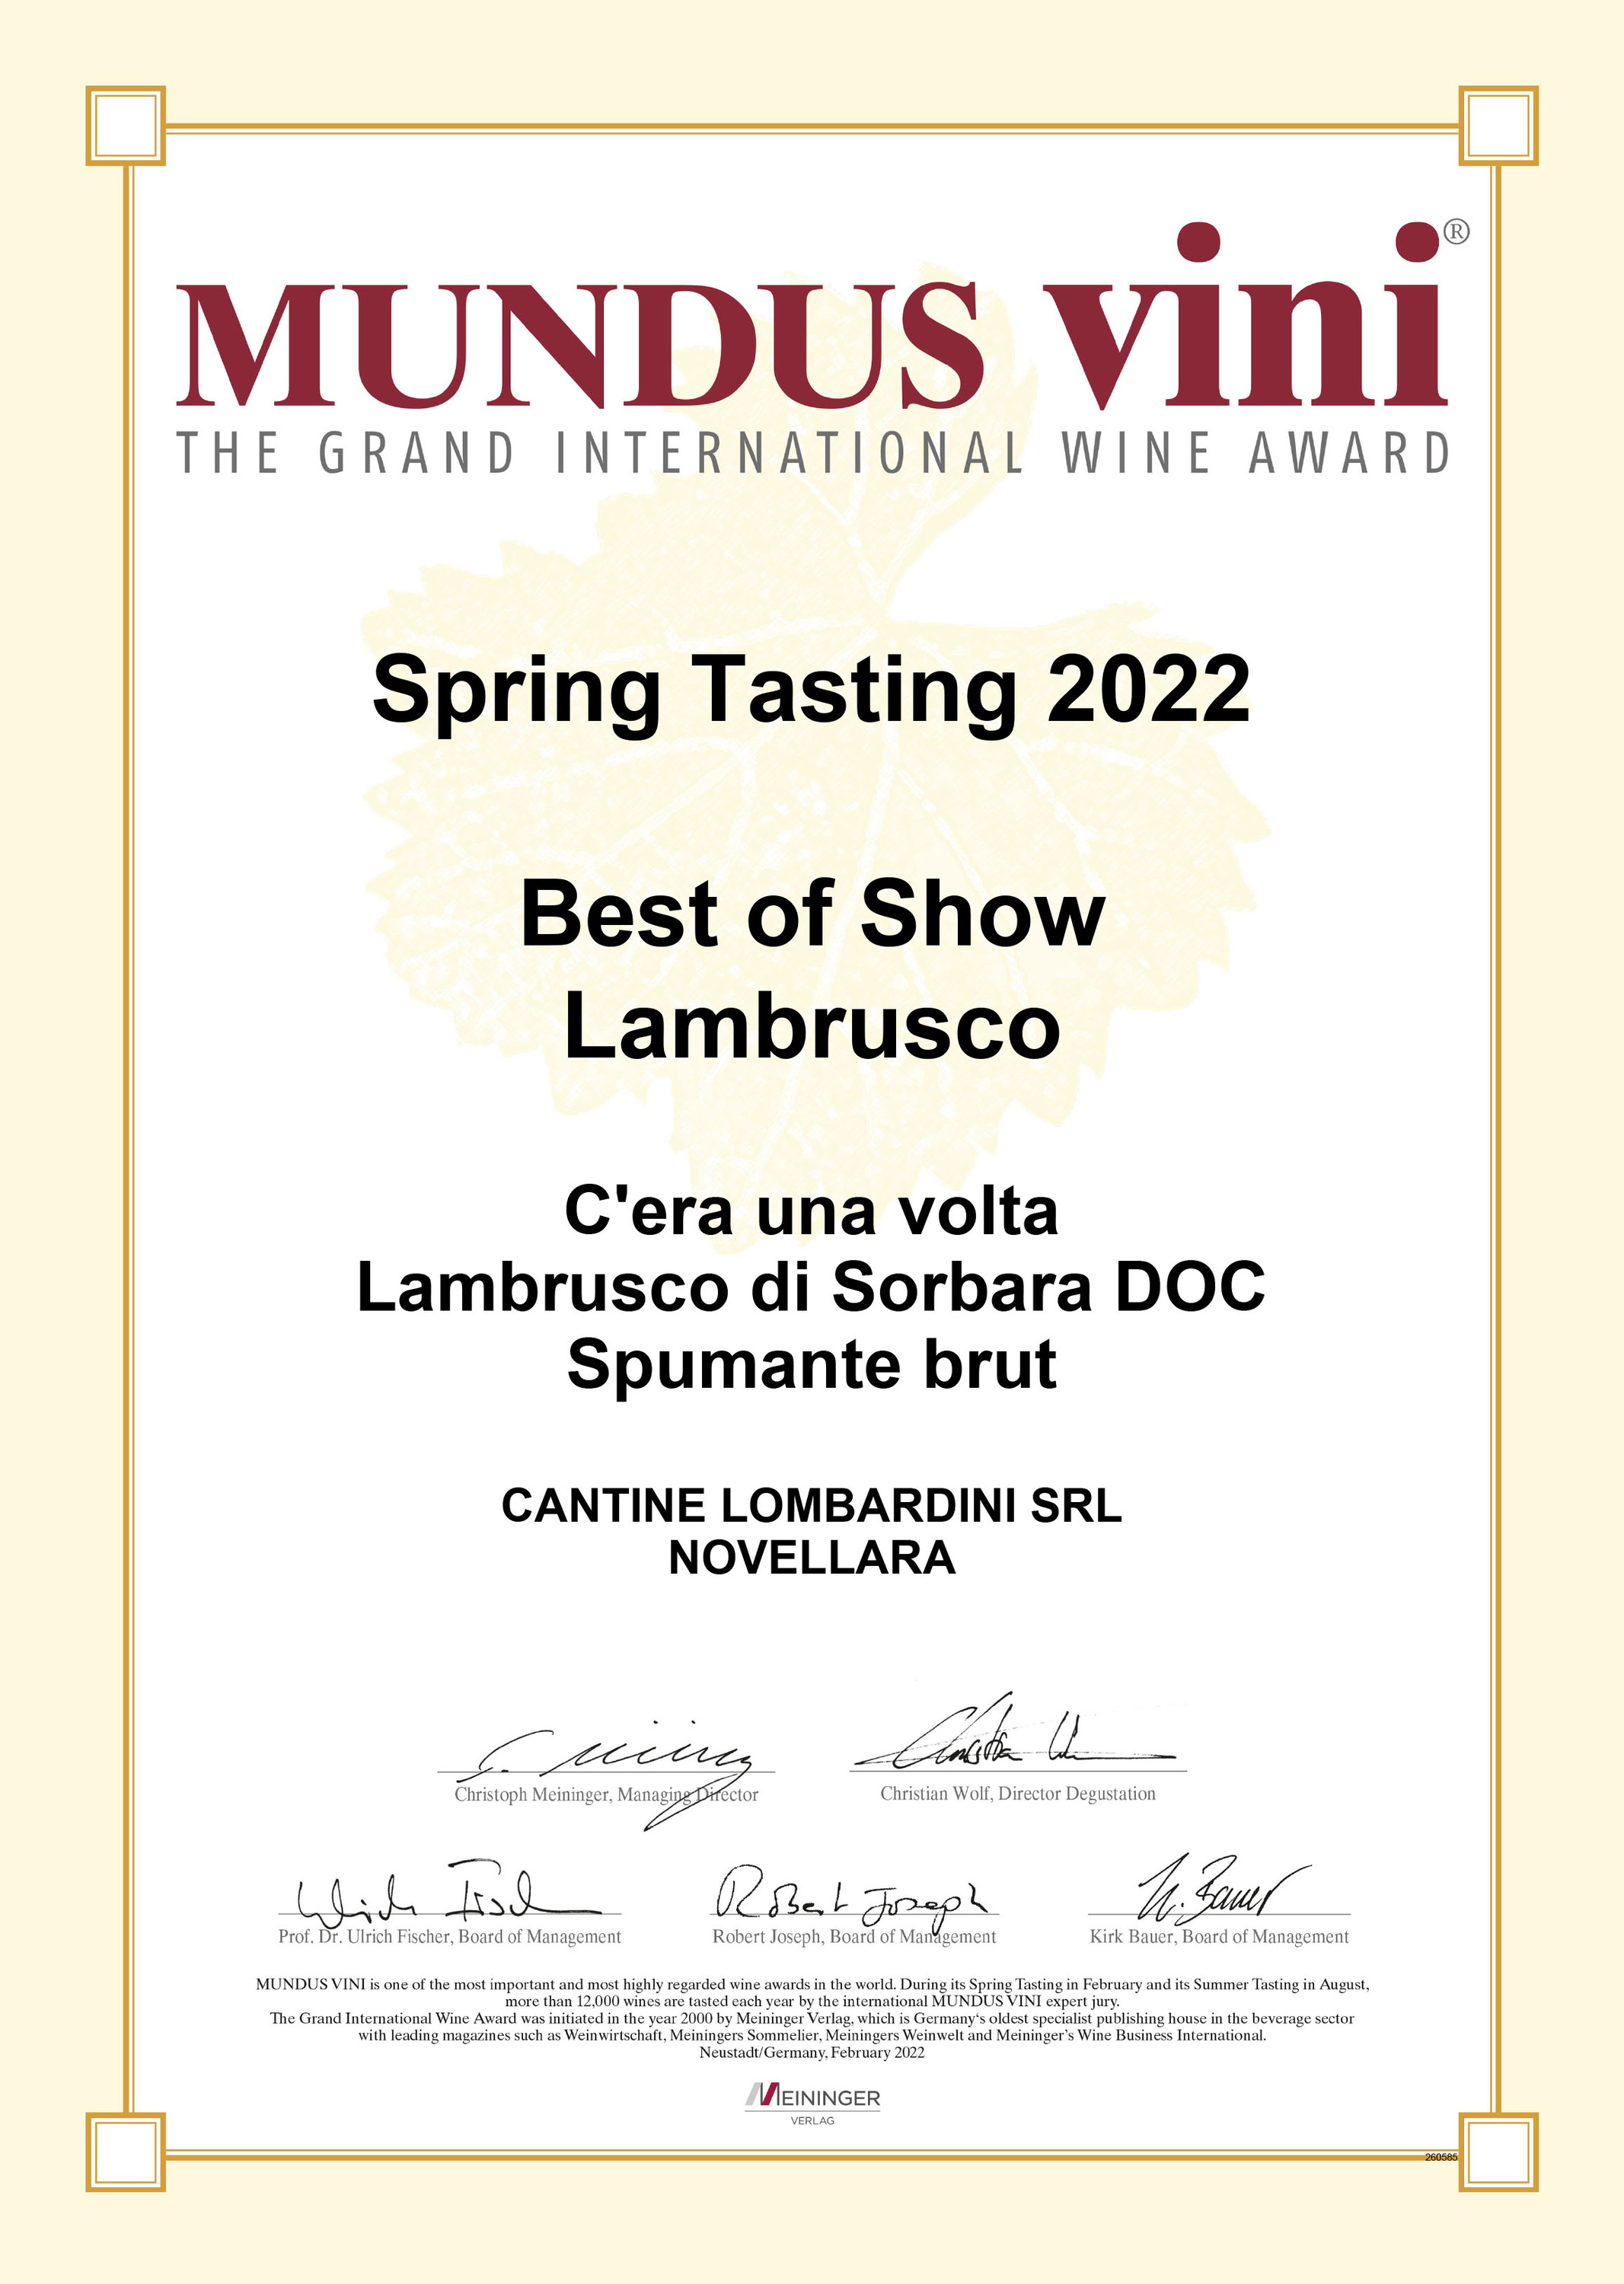 MUNDUS VINI GOLD MEDAL SPRINGTASTING 2021 - Lombardini Vini